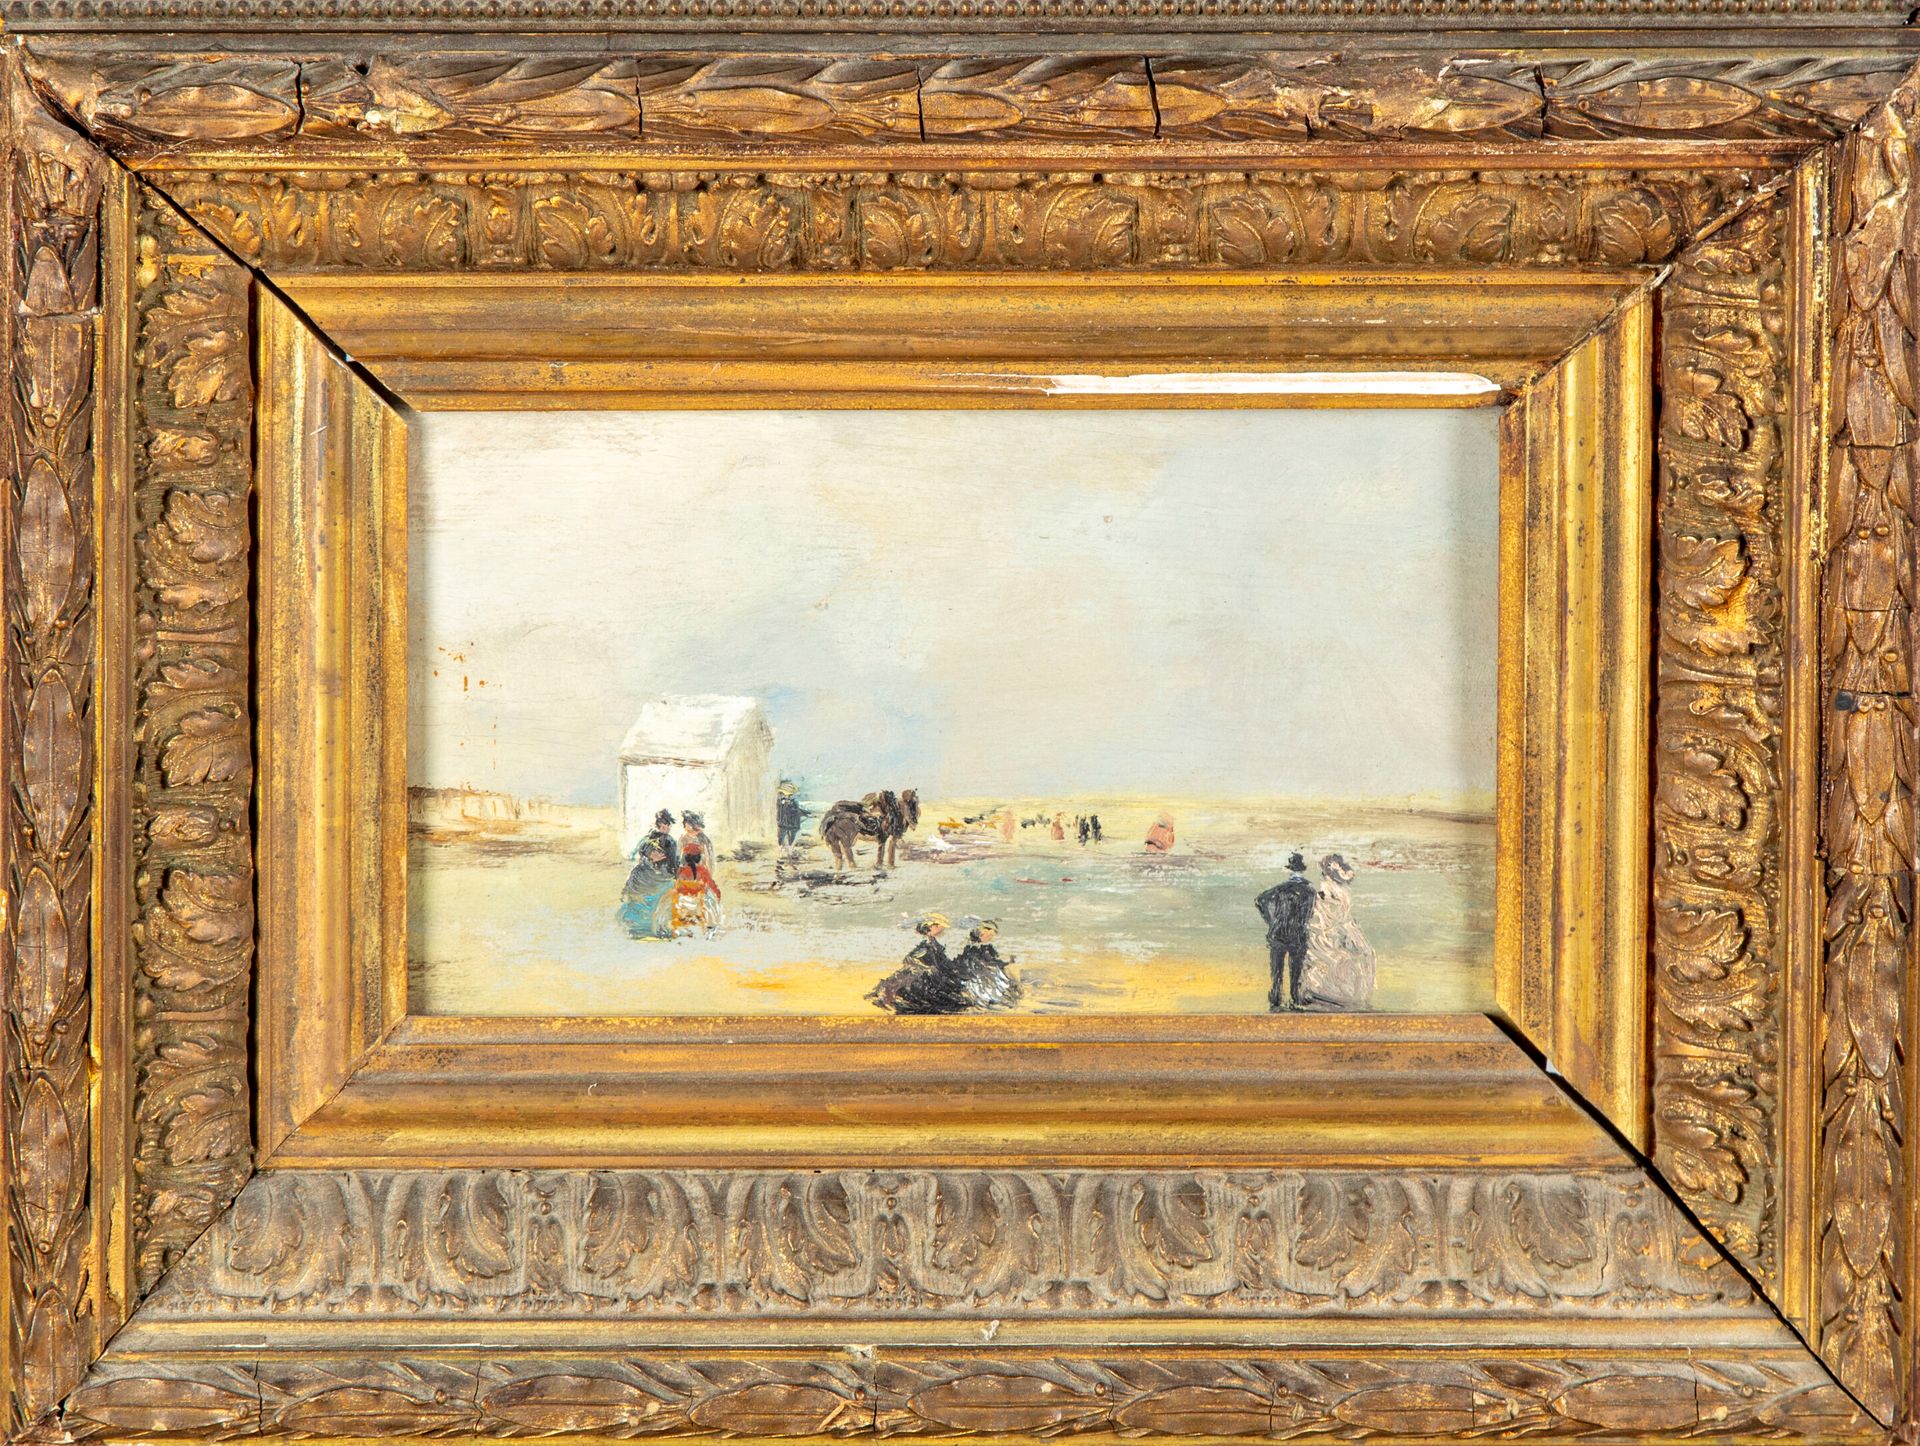 ECOLE FRANCAISE XIXè 19世纪法国学校--欧仁-布丹的周围环境

海边有优雅的人，有活力的人

板上油彩

11,5 x 19 cm